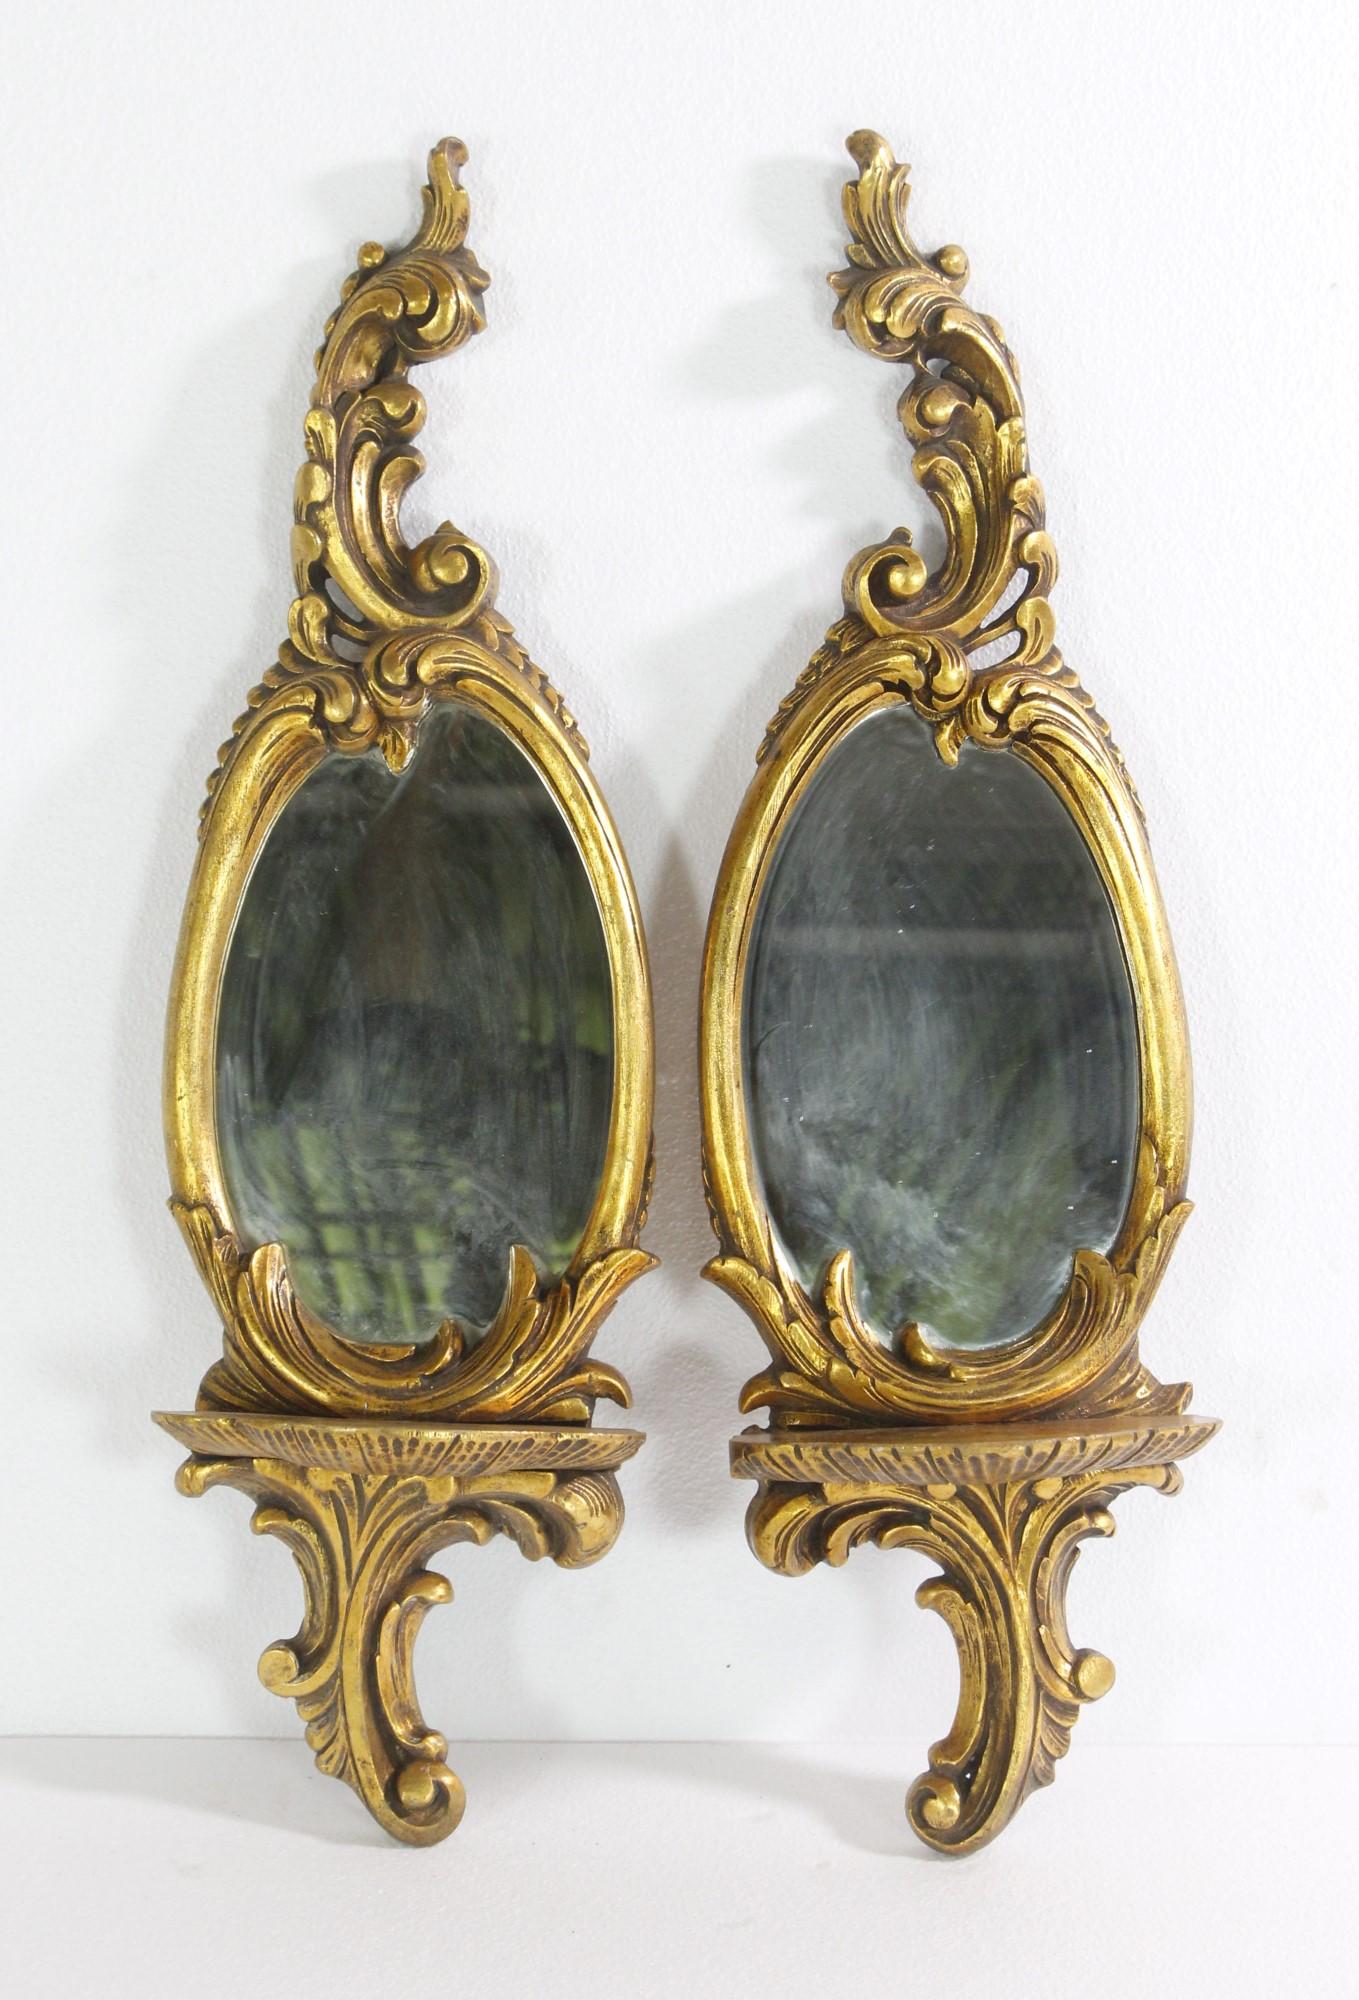 Paire de miroirs muraux en bois doré avec étagère et détails de feuillage. Les miroirs sont de forme ovale et le cadre en bois est orné de détails floraux sur l'ensemble du plateau et du dessus. Le prix est fixé par paire. Veuillez noter que cet